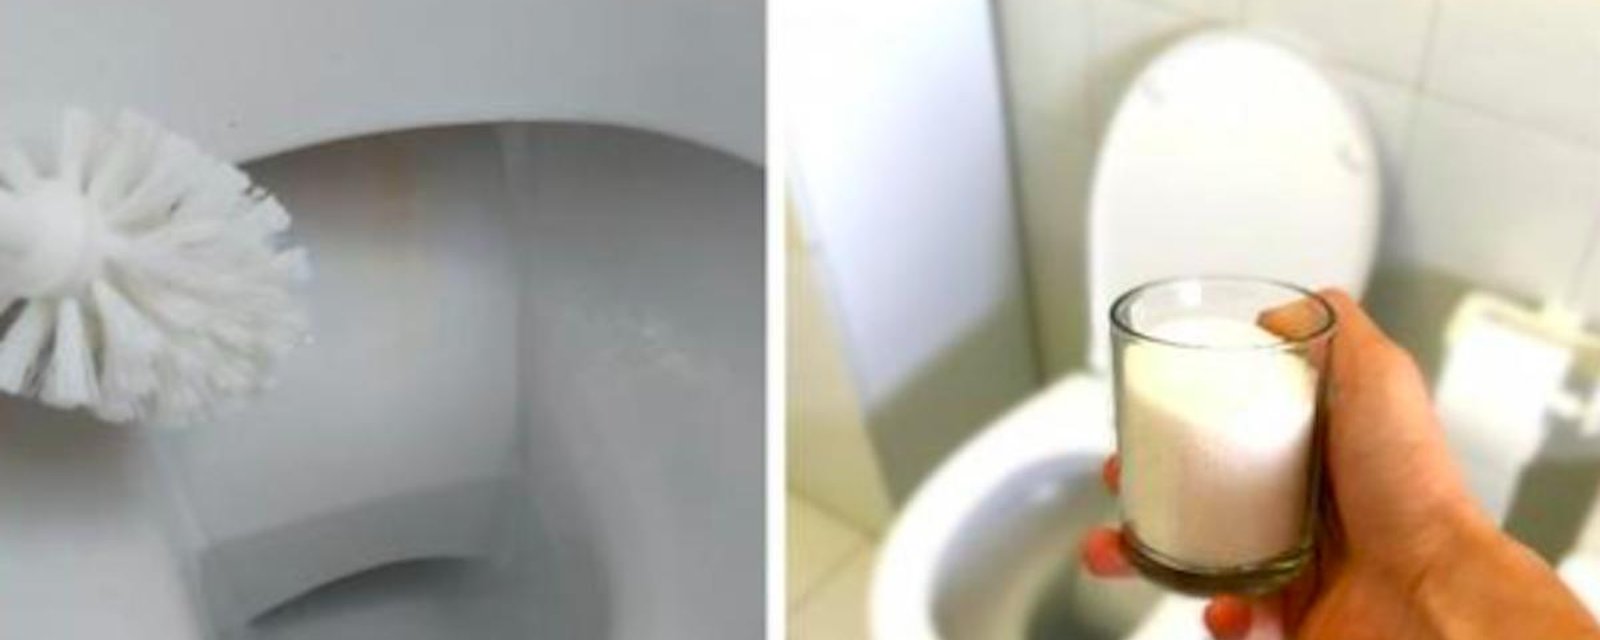 5 astuces simples pour effacer les taches jaunes dans la cuvette de toilette